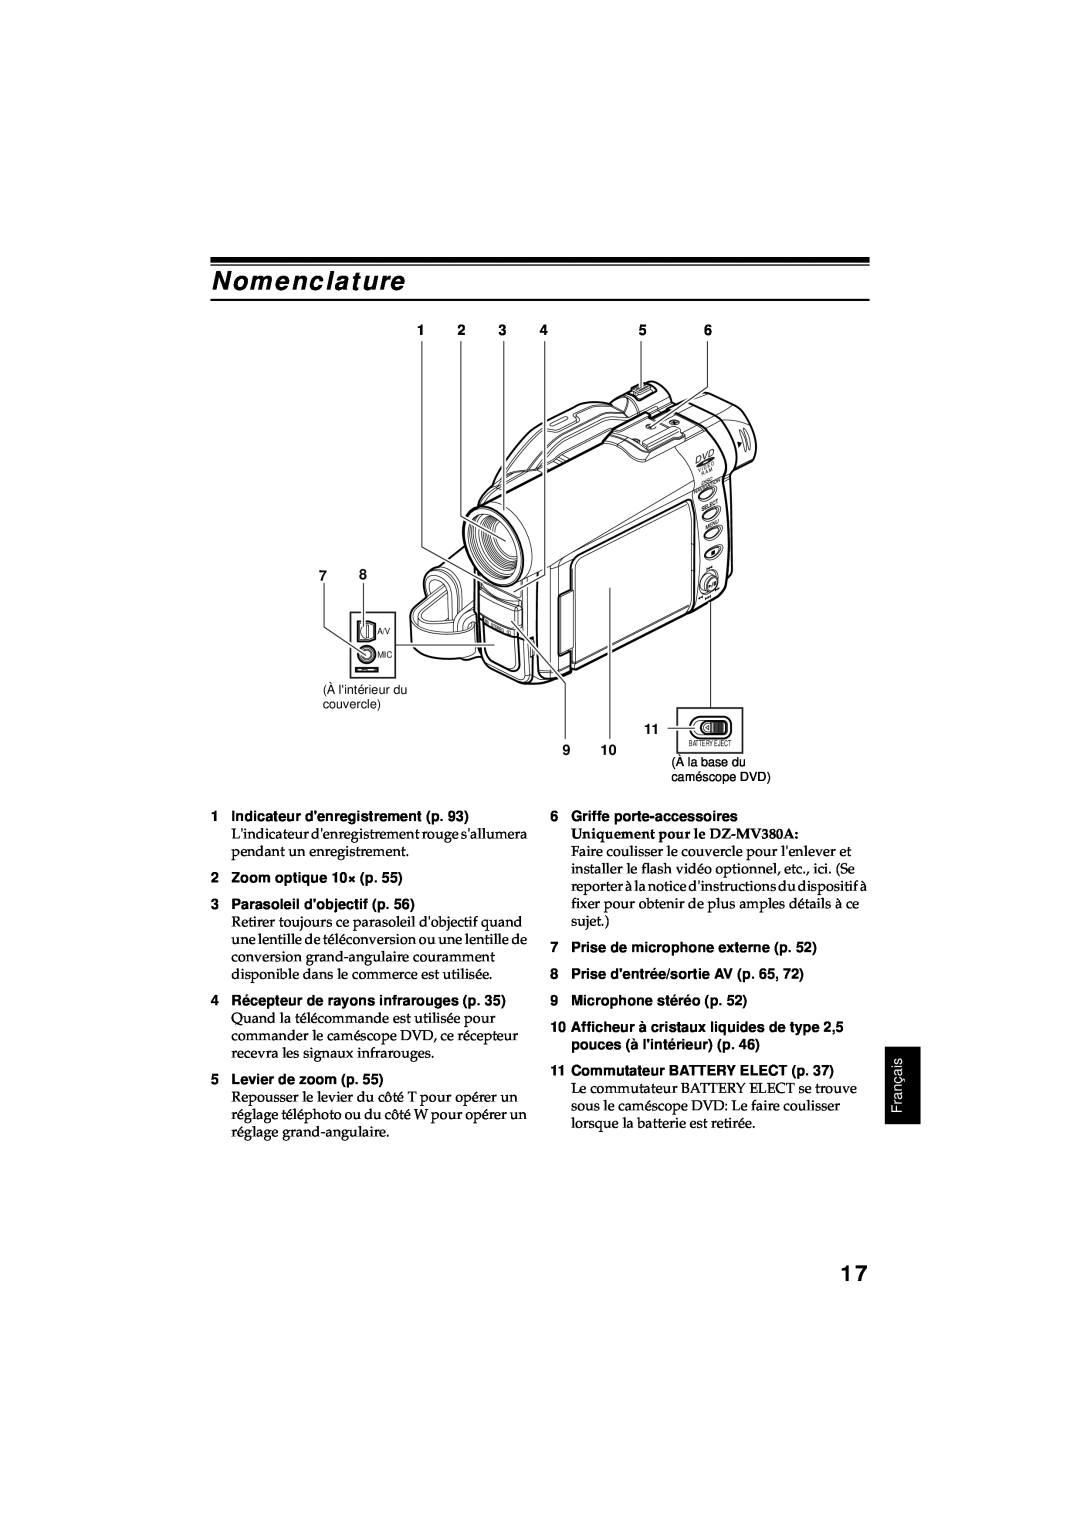 Hitachi DZ-MV380A manual Nomenclature, Indicateur denregistrement p, Zoom optique 10× p 3 Parasoleil dobjectif p, Français 